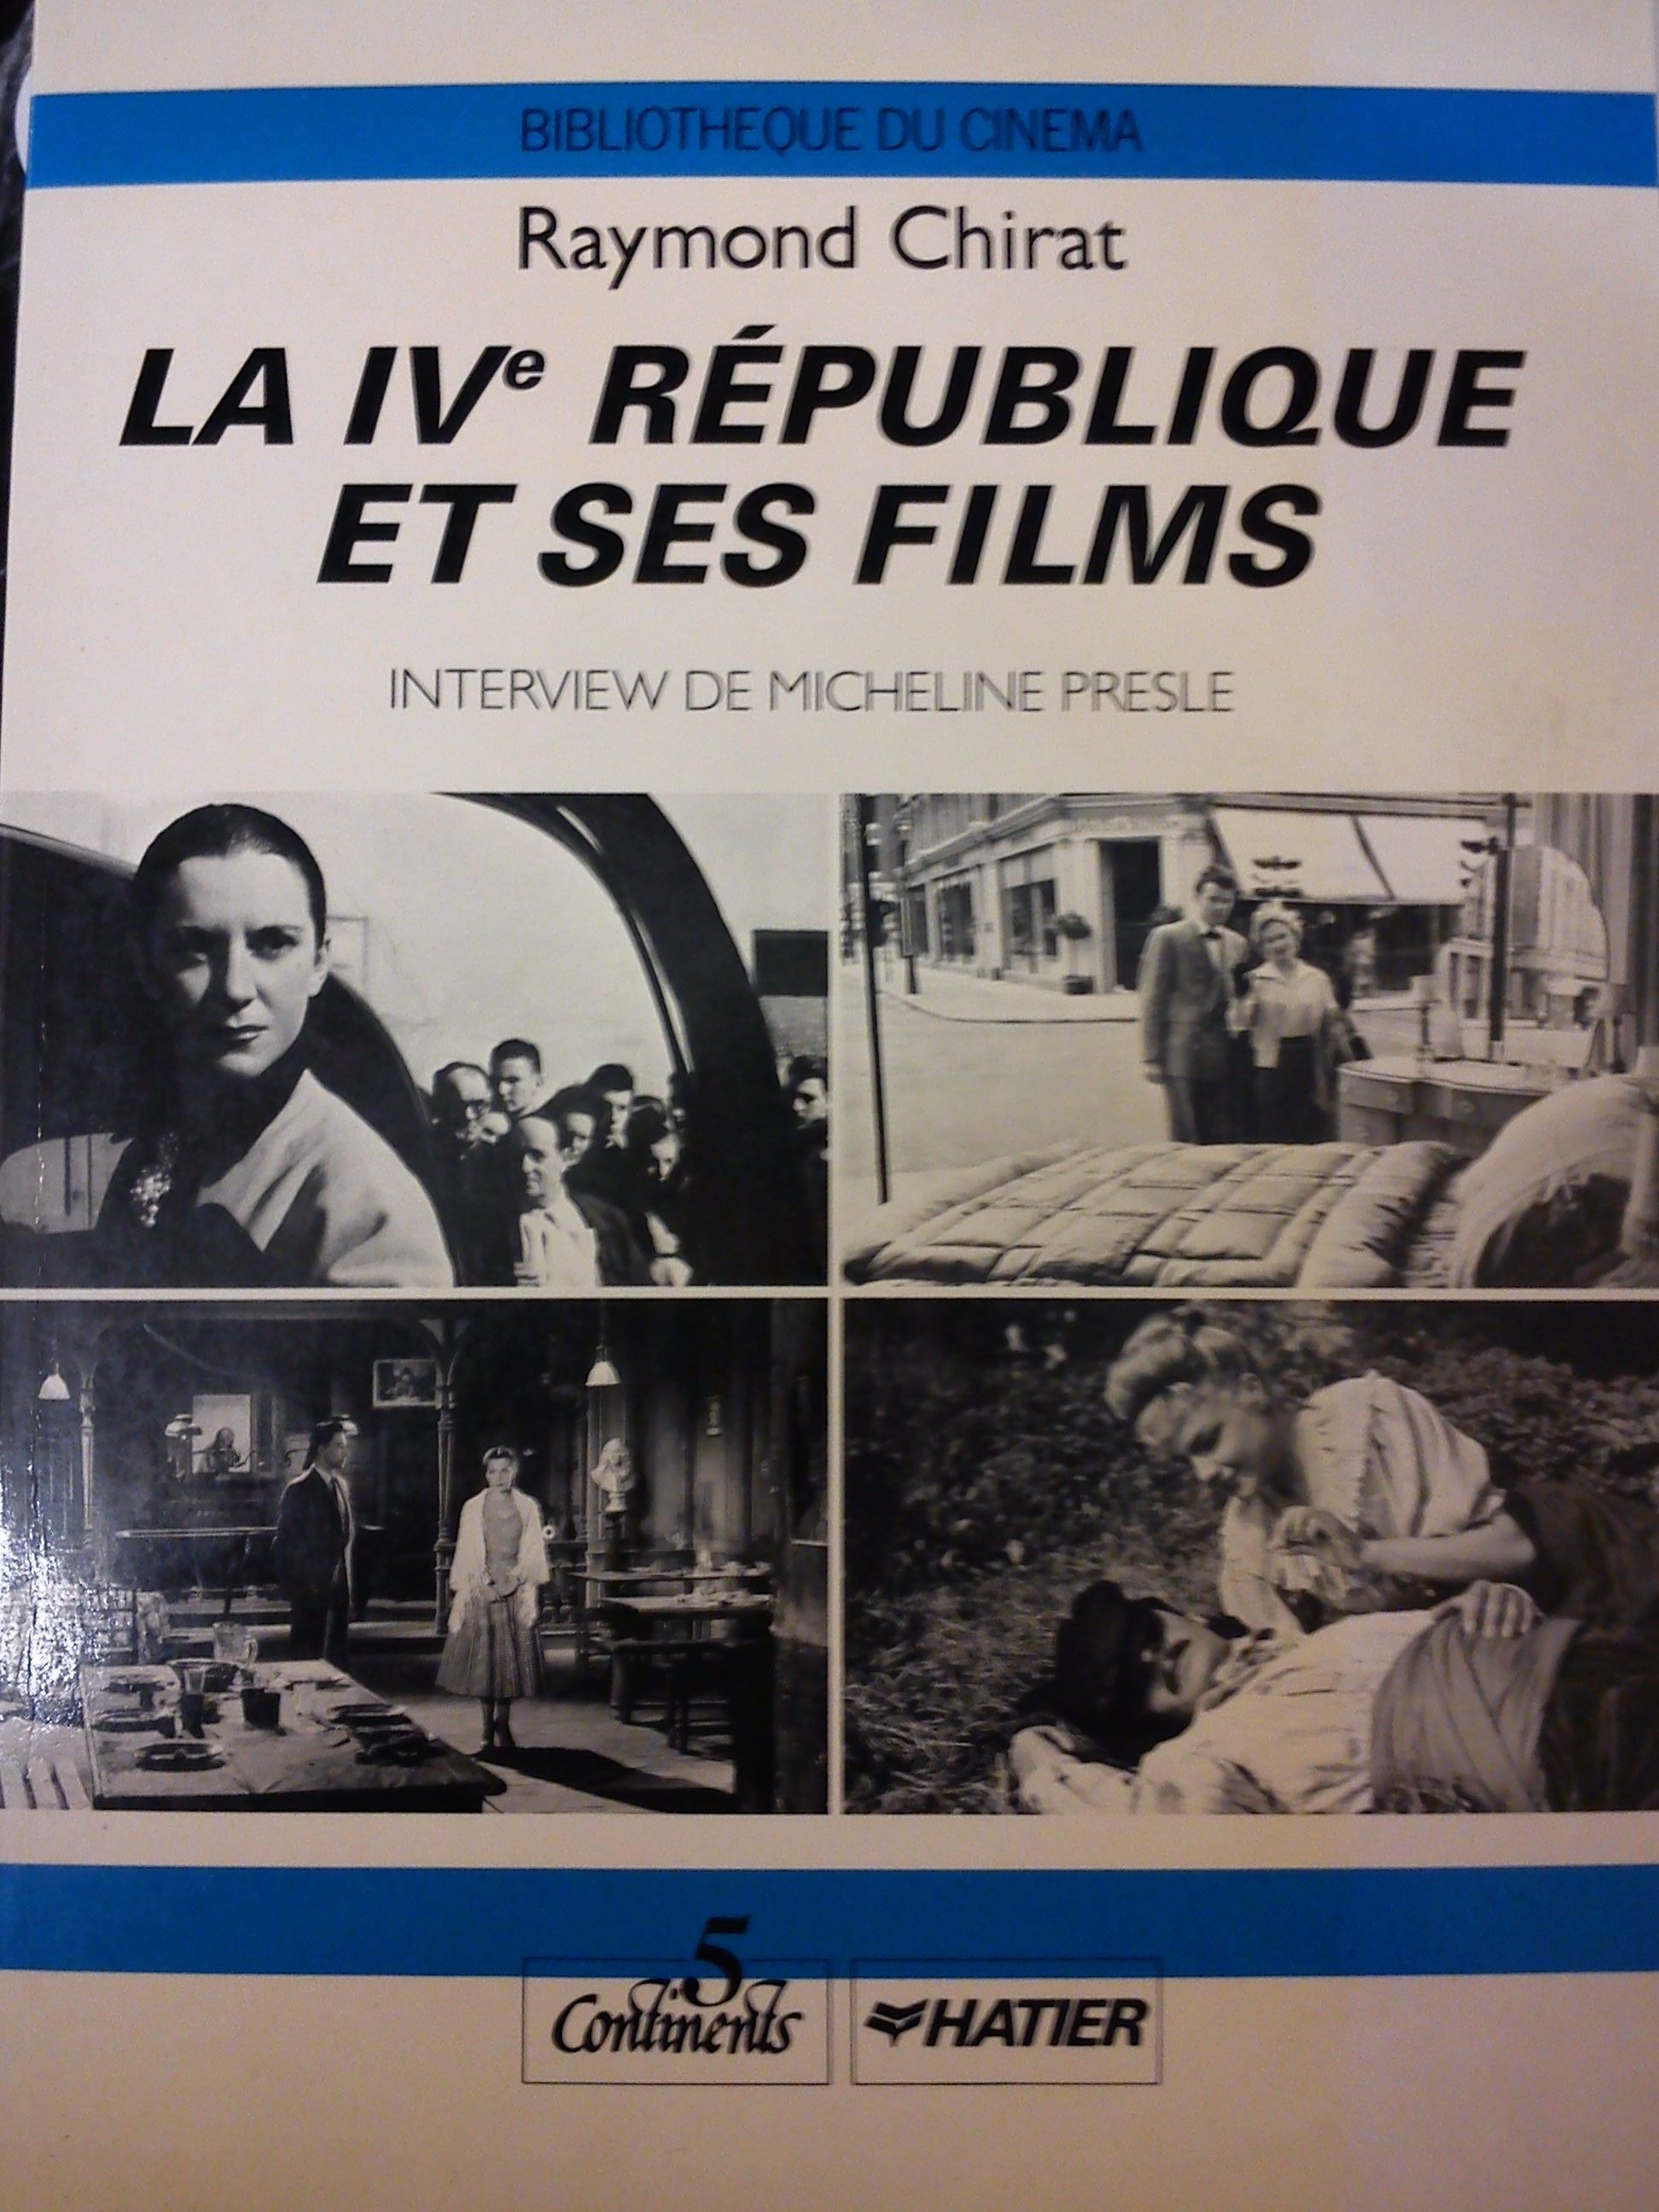 LA IVe REPUBLIQUE ET SES FILMS